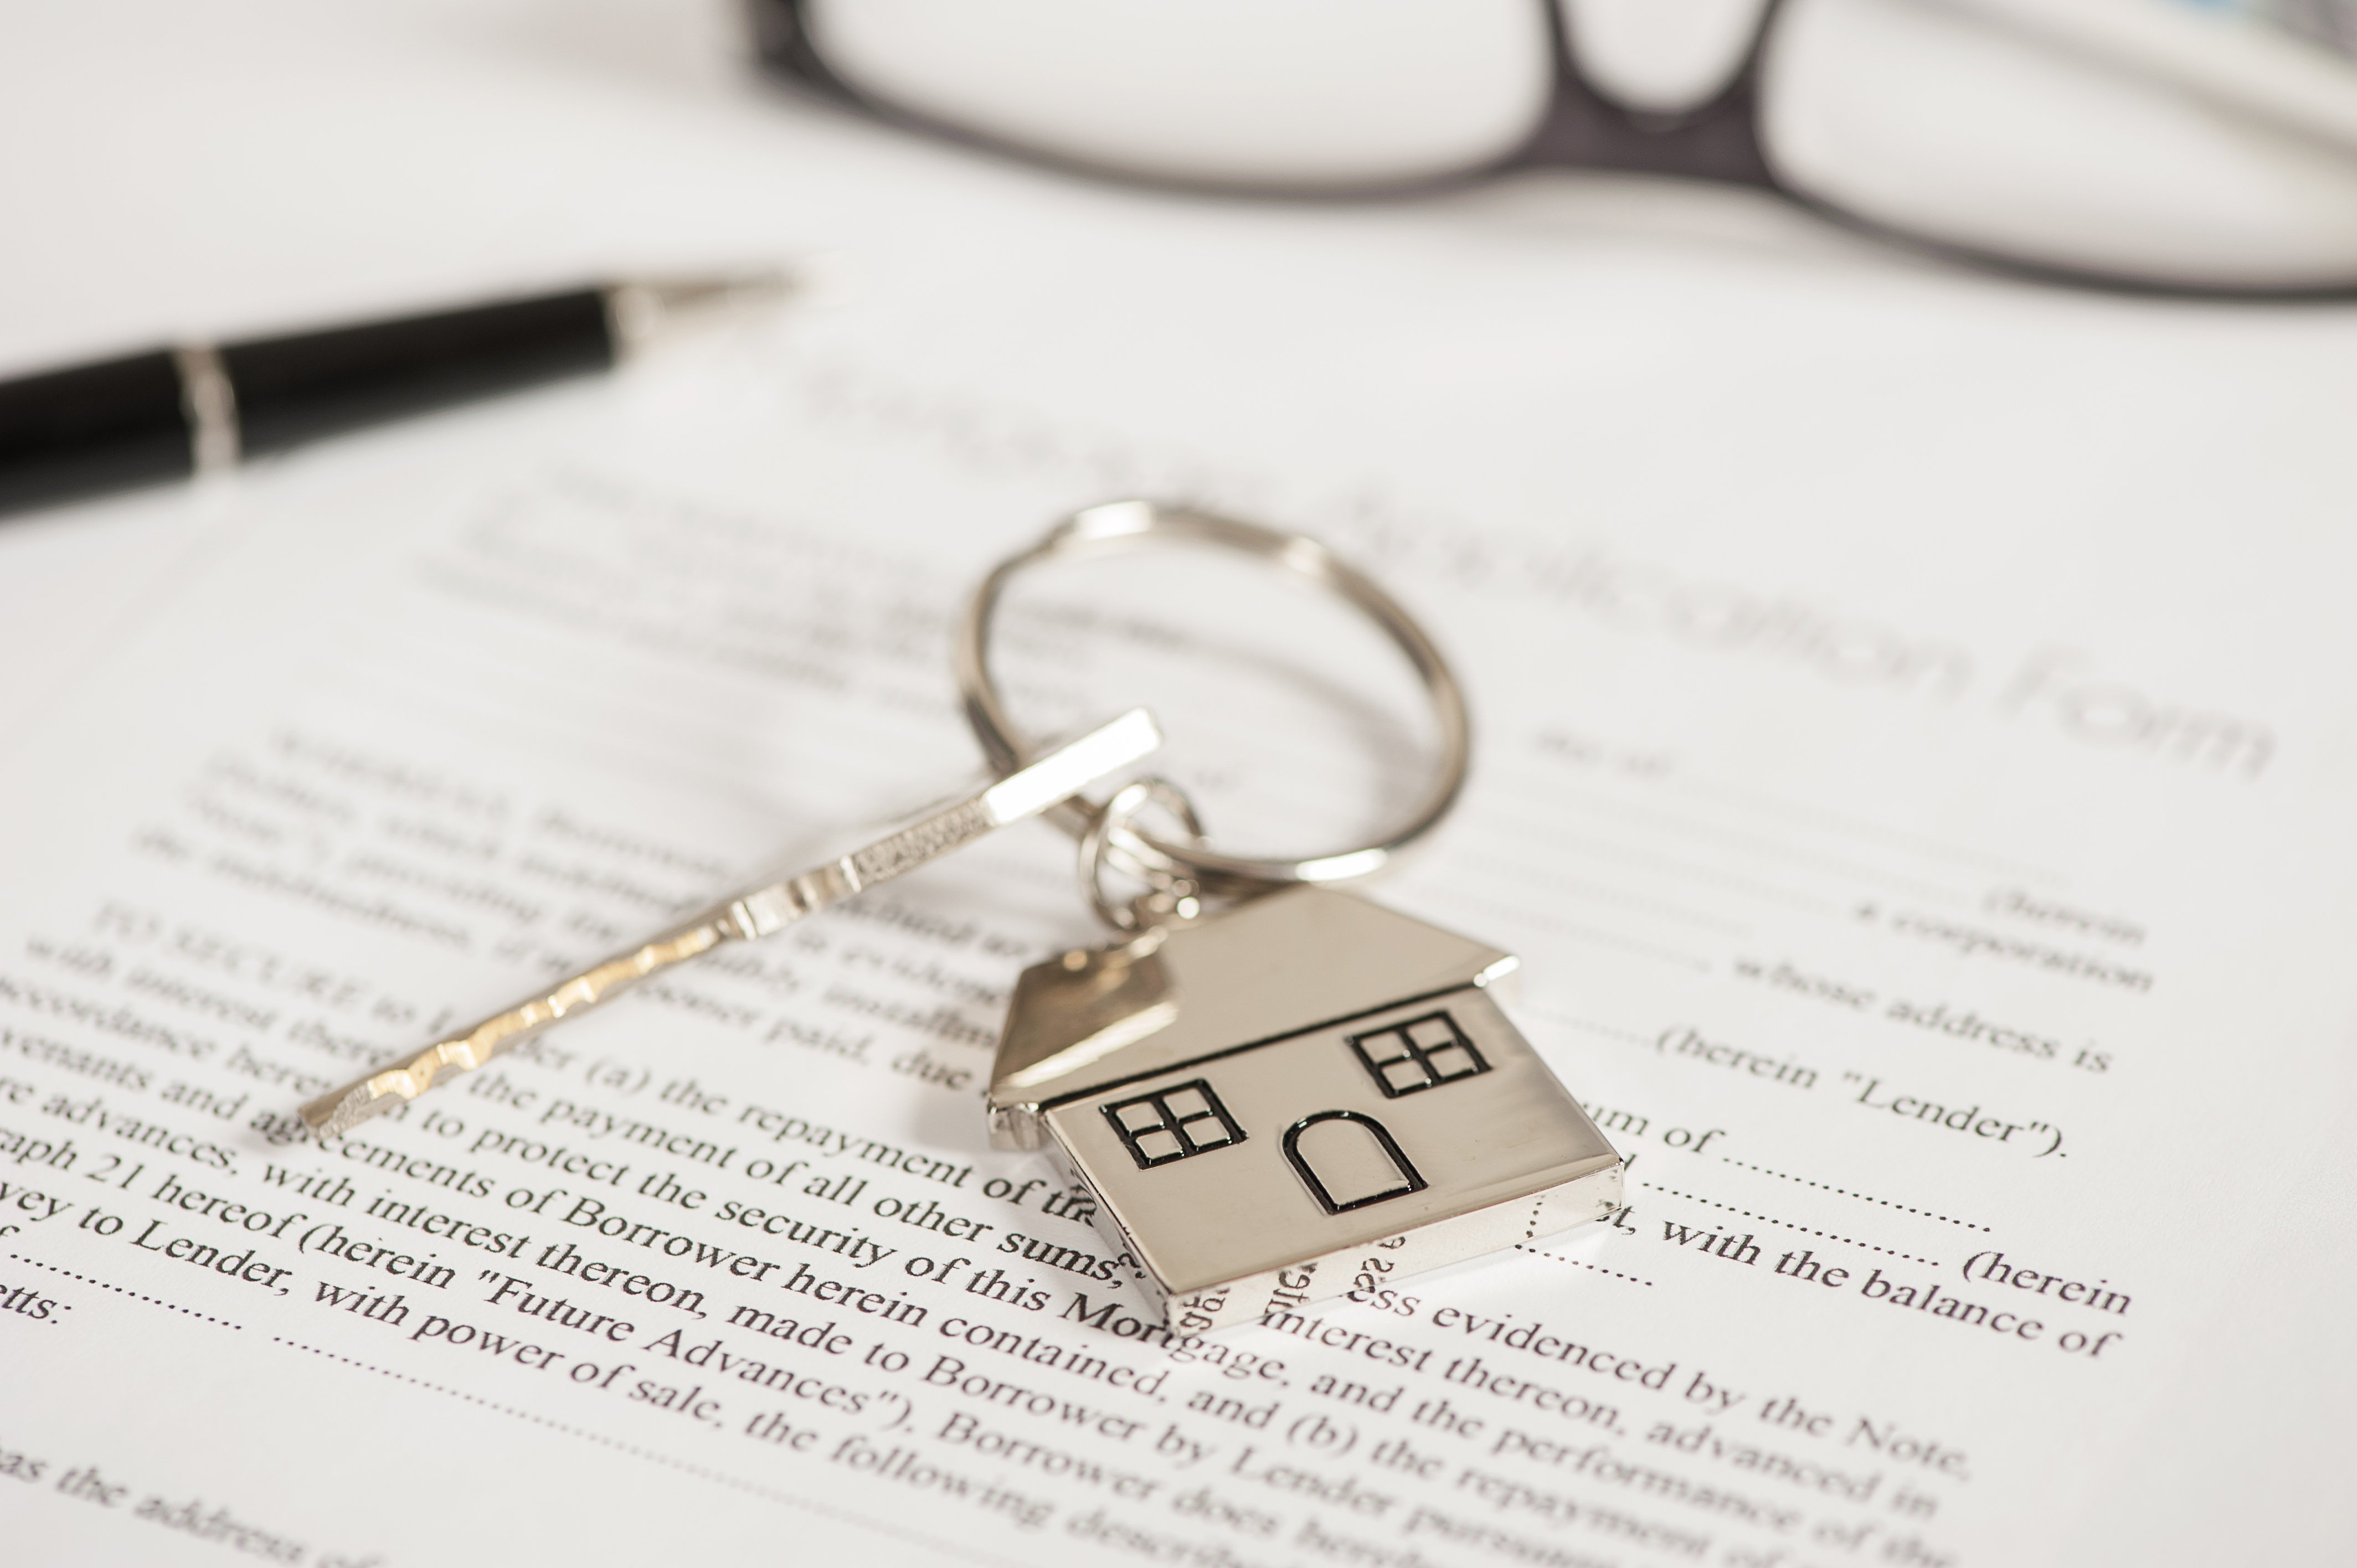 Documentos de bienes raíces. | Foto: Shutterstock